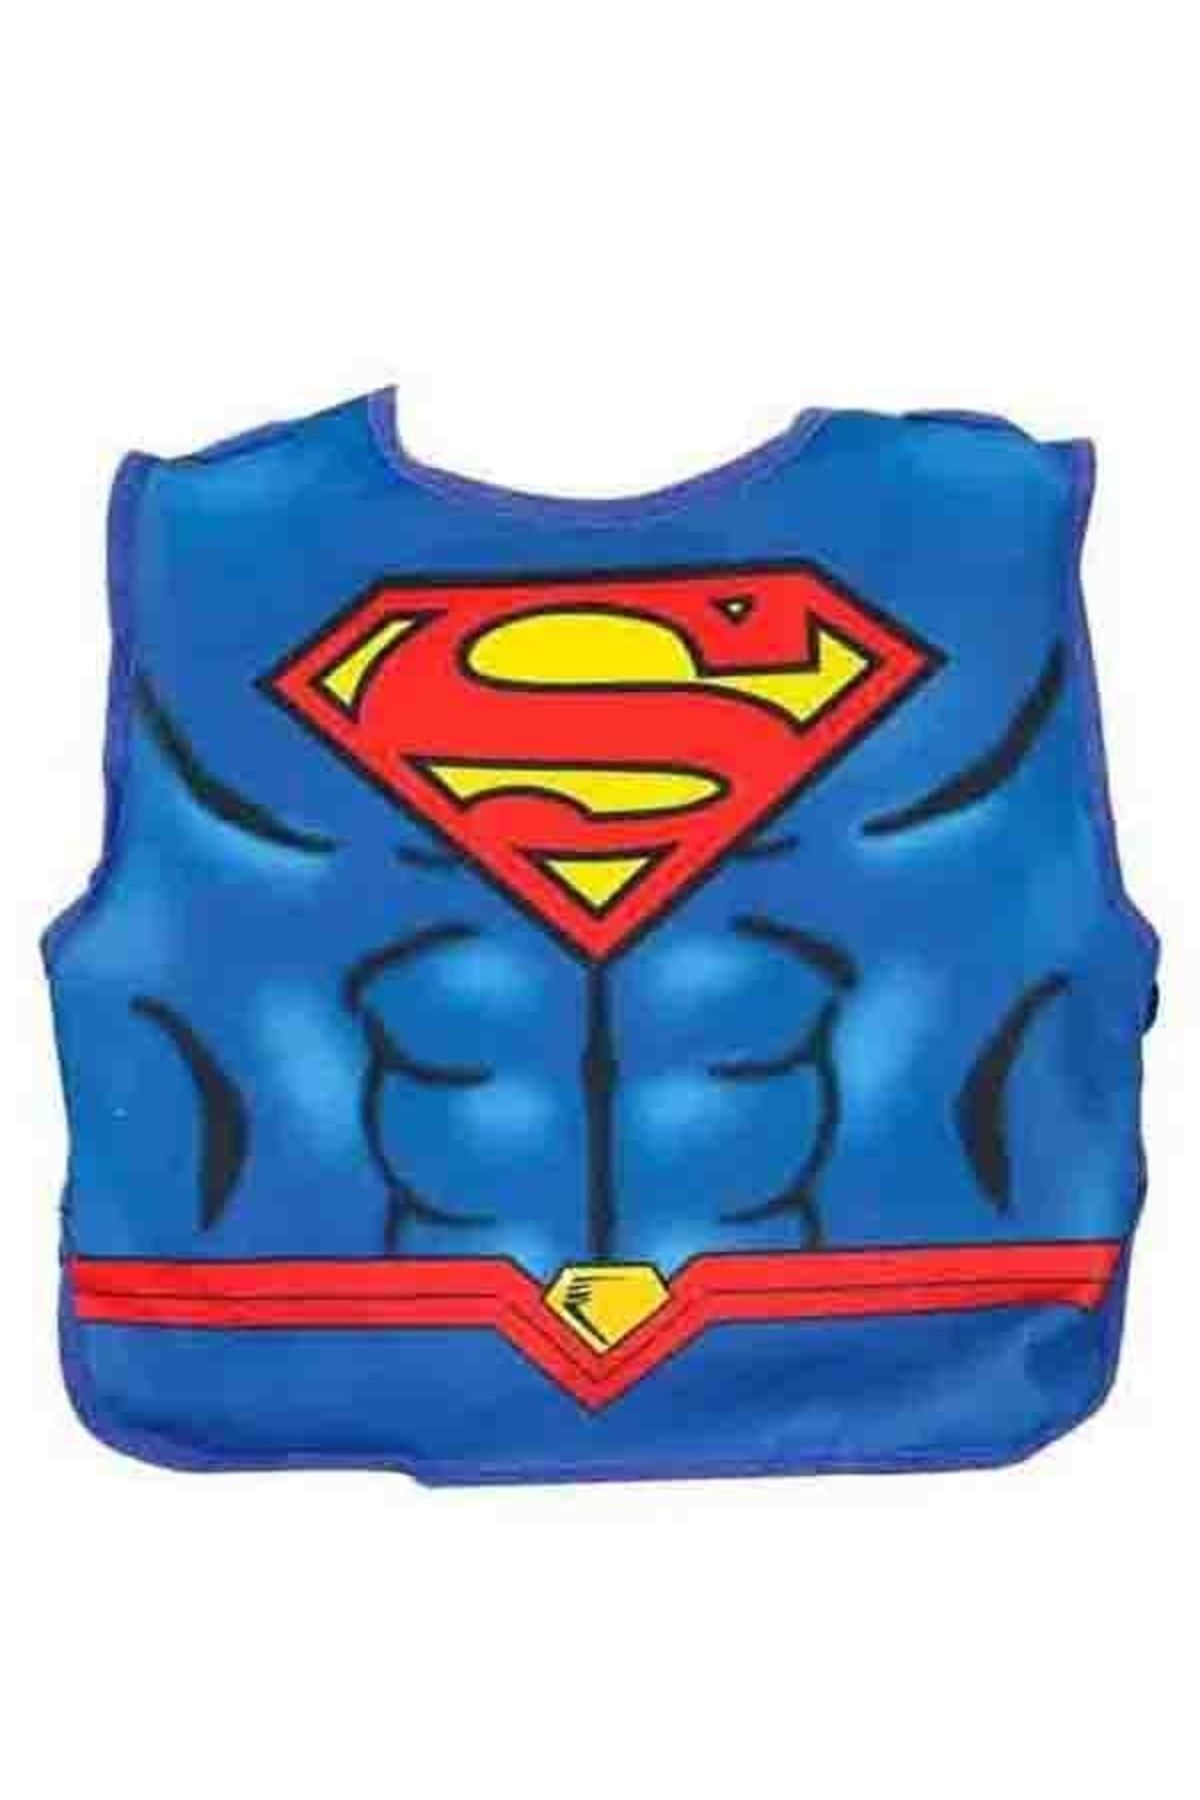 Mega Oyuncak Superman Yelek Ve Pelerin Seti Süpermen Kostümü